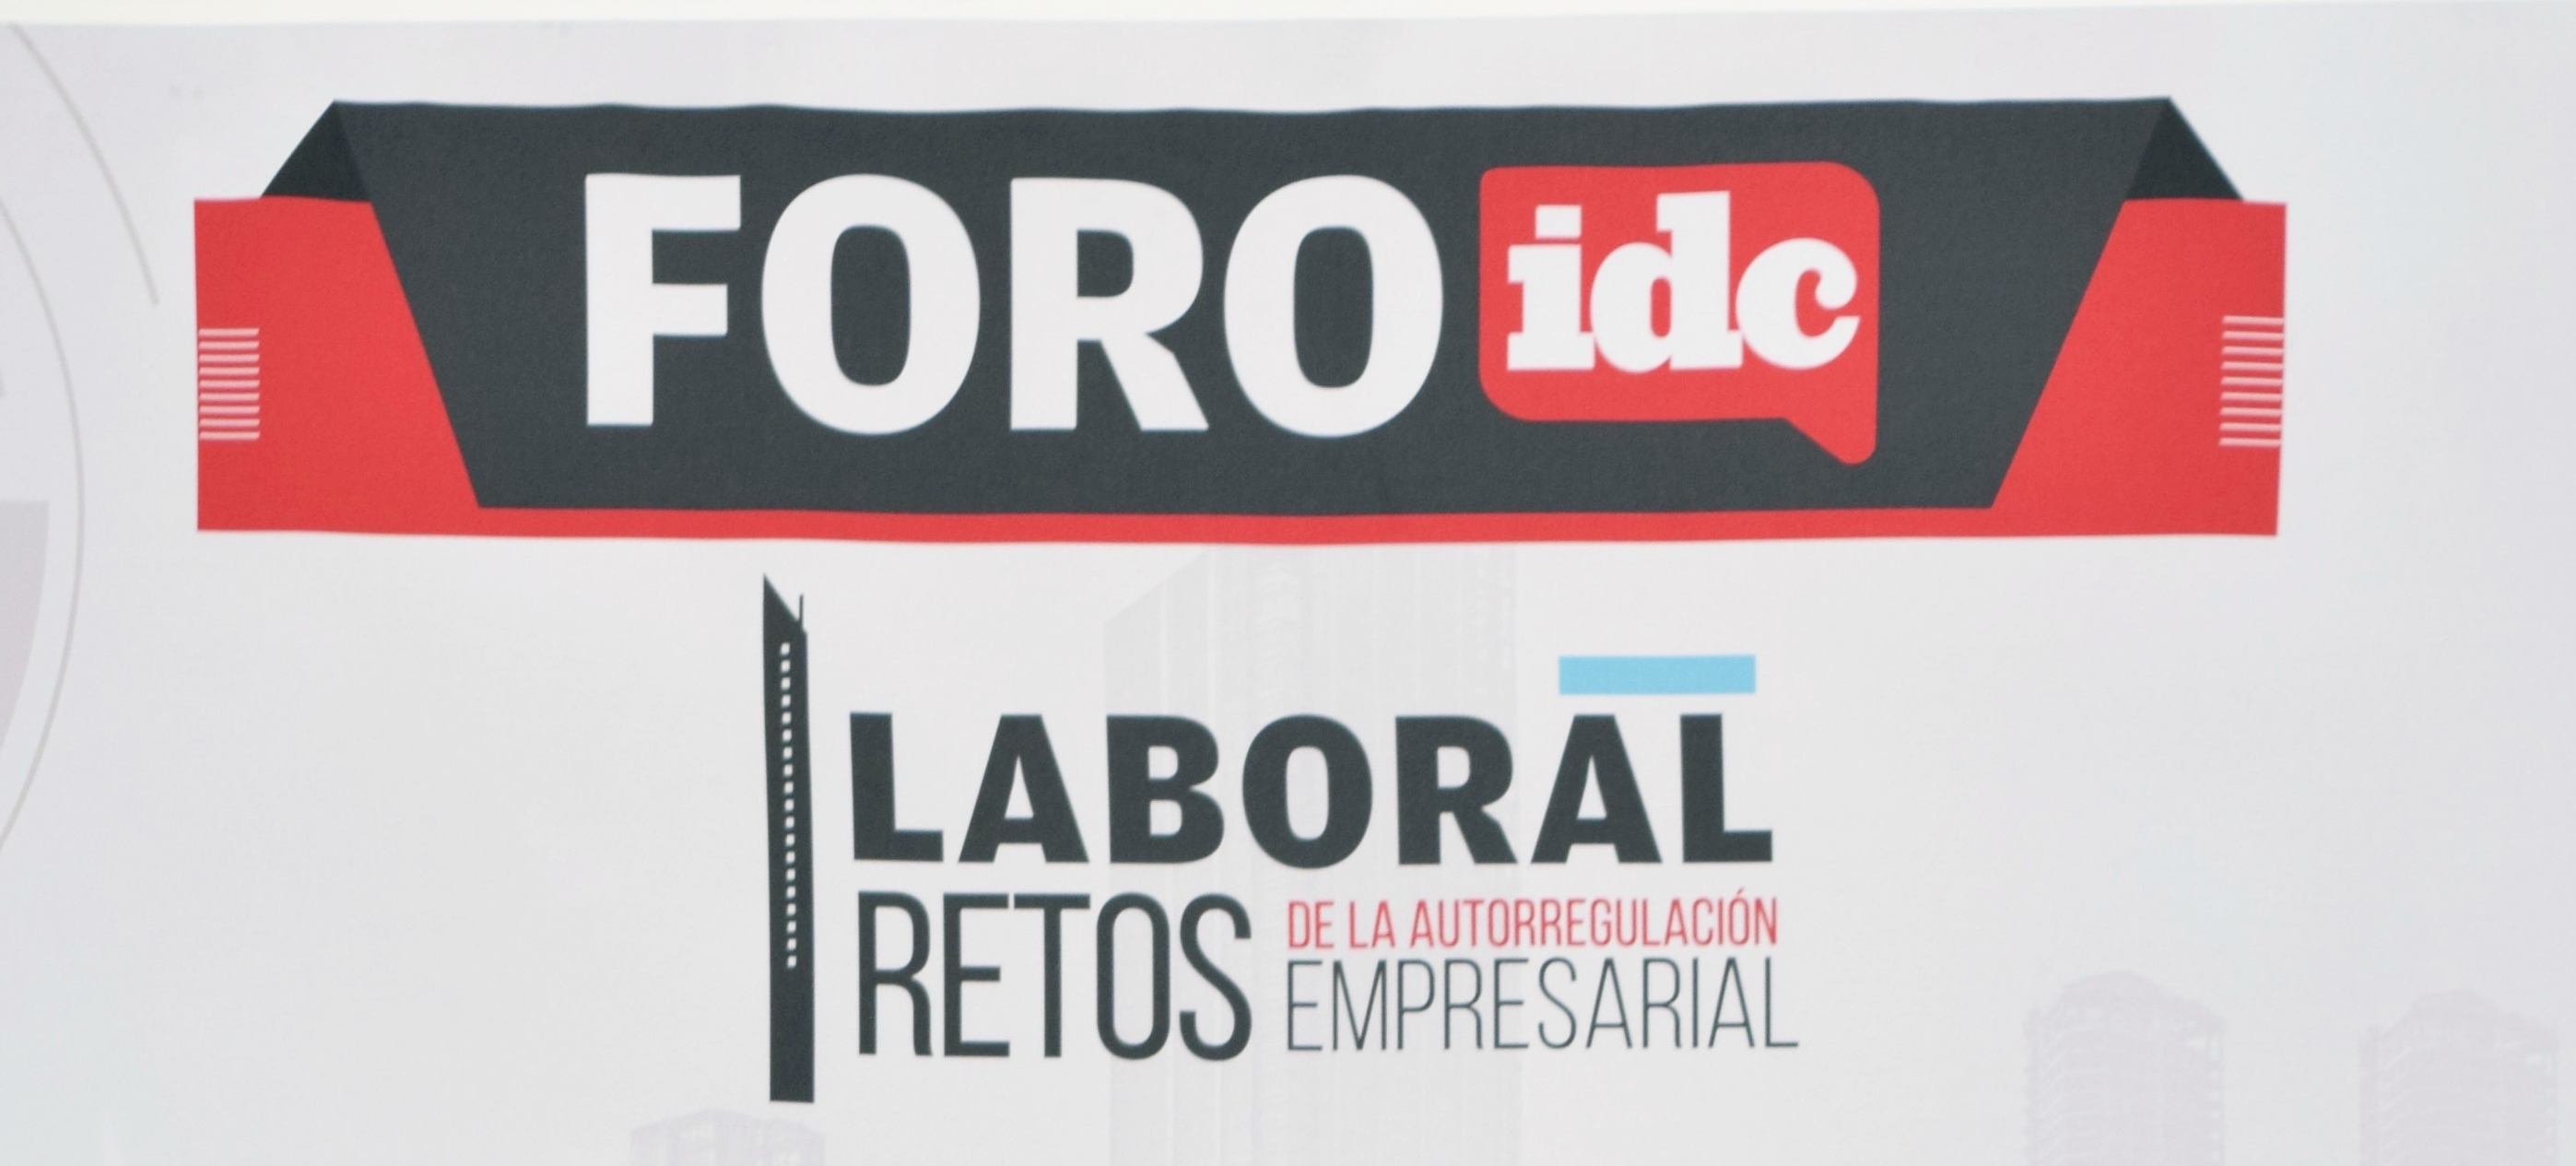 FORO IDC, 4 años de capacitar a las empresas mexicanas